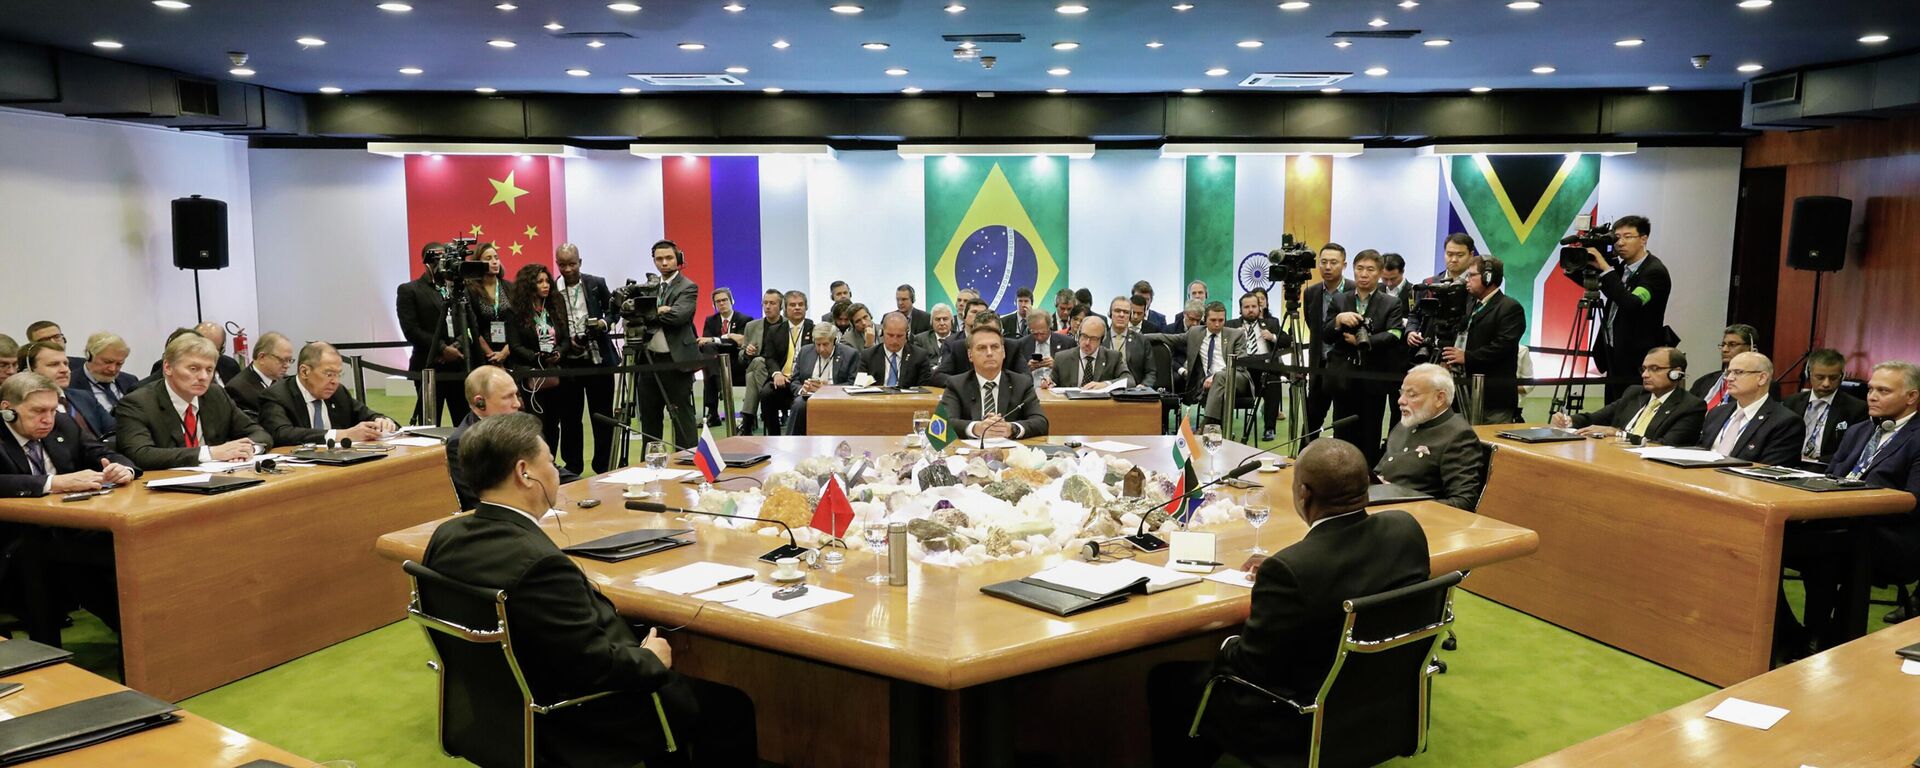 Sessão Plenária da XI Cúpula do Brics, em Brasília, em novembro de 2019 (foto de arquivo) - Sputnik Brasil, 1920, 28.06.2022